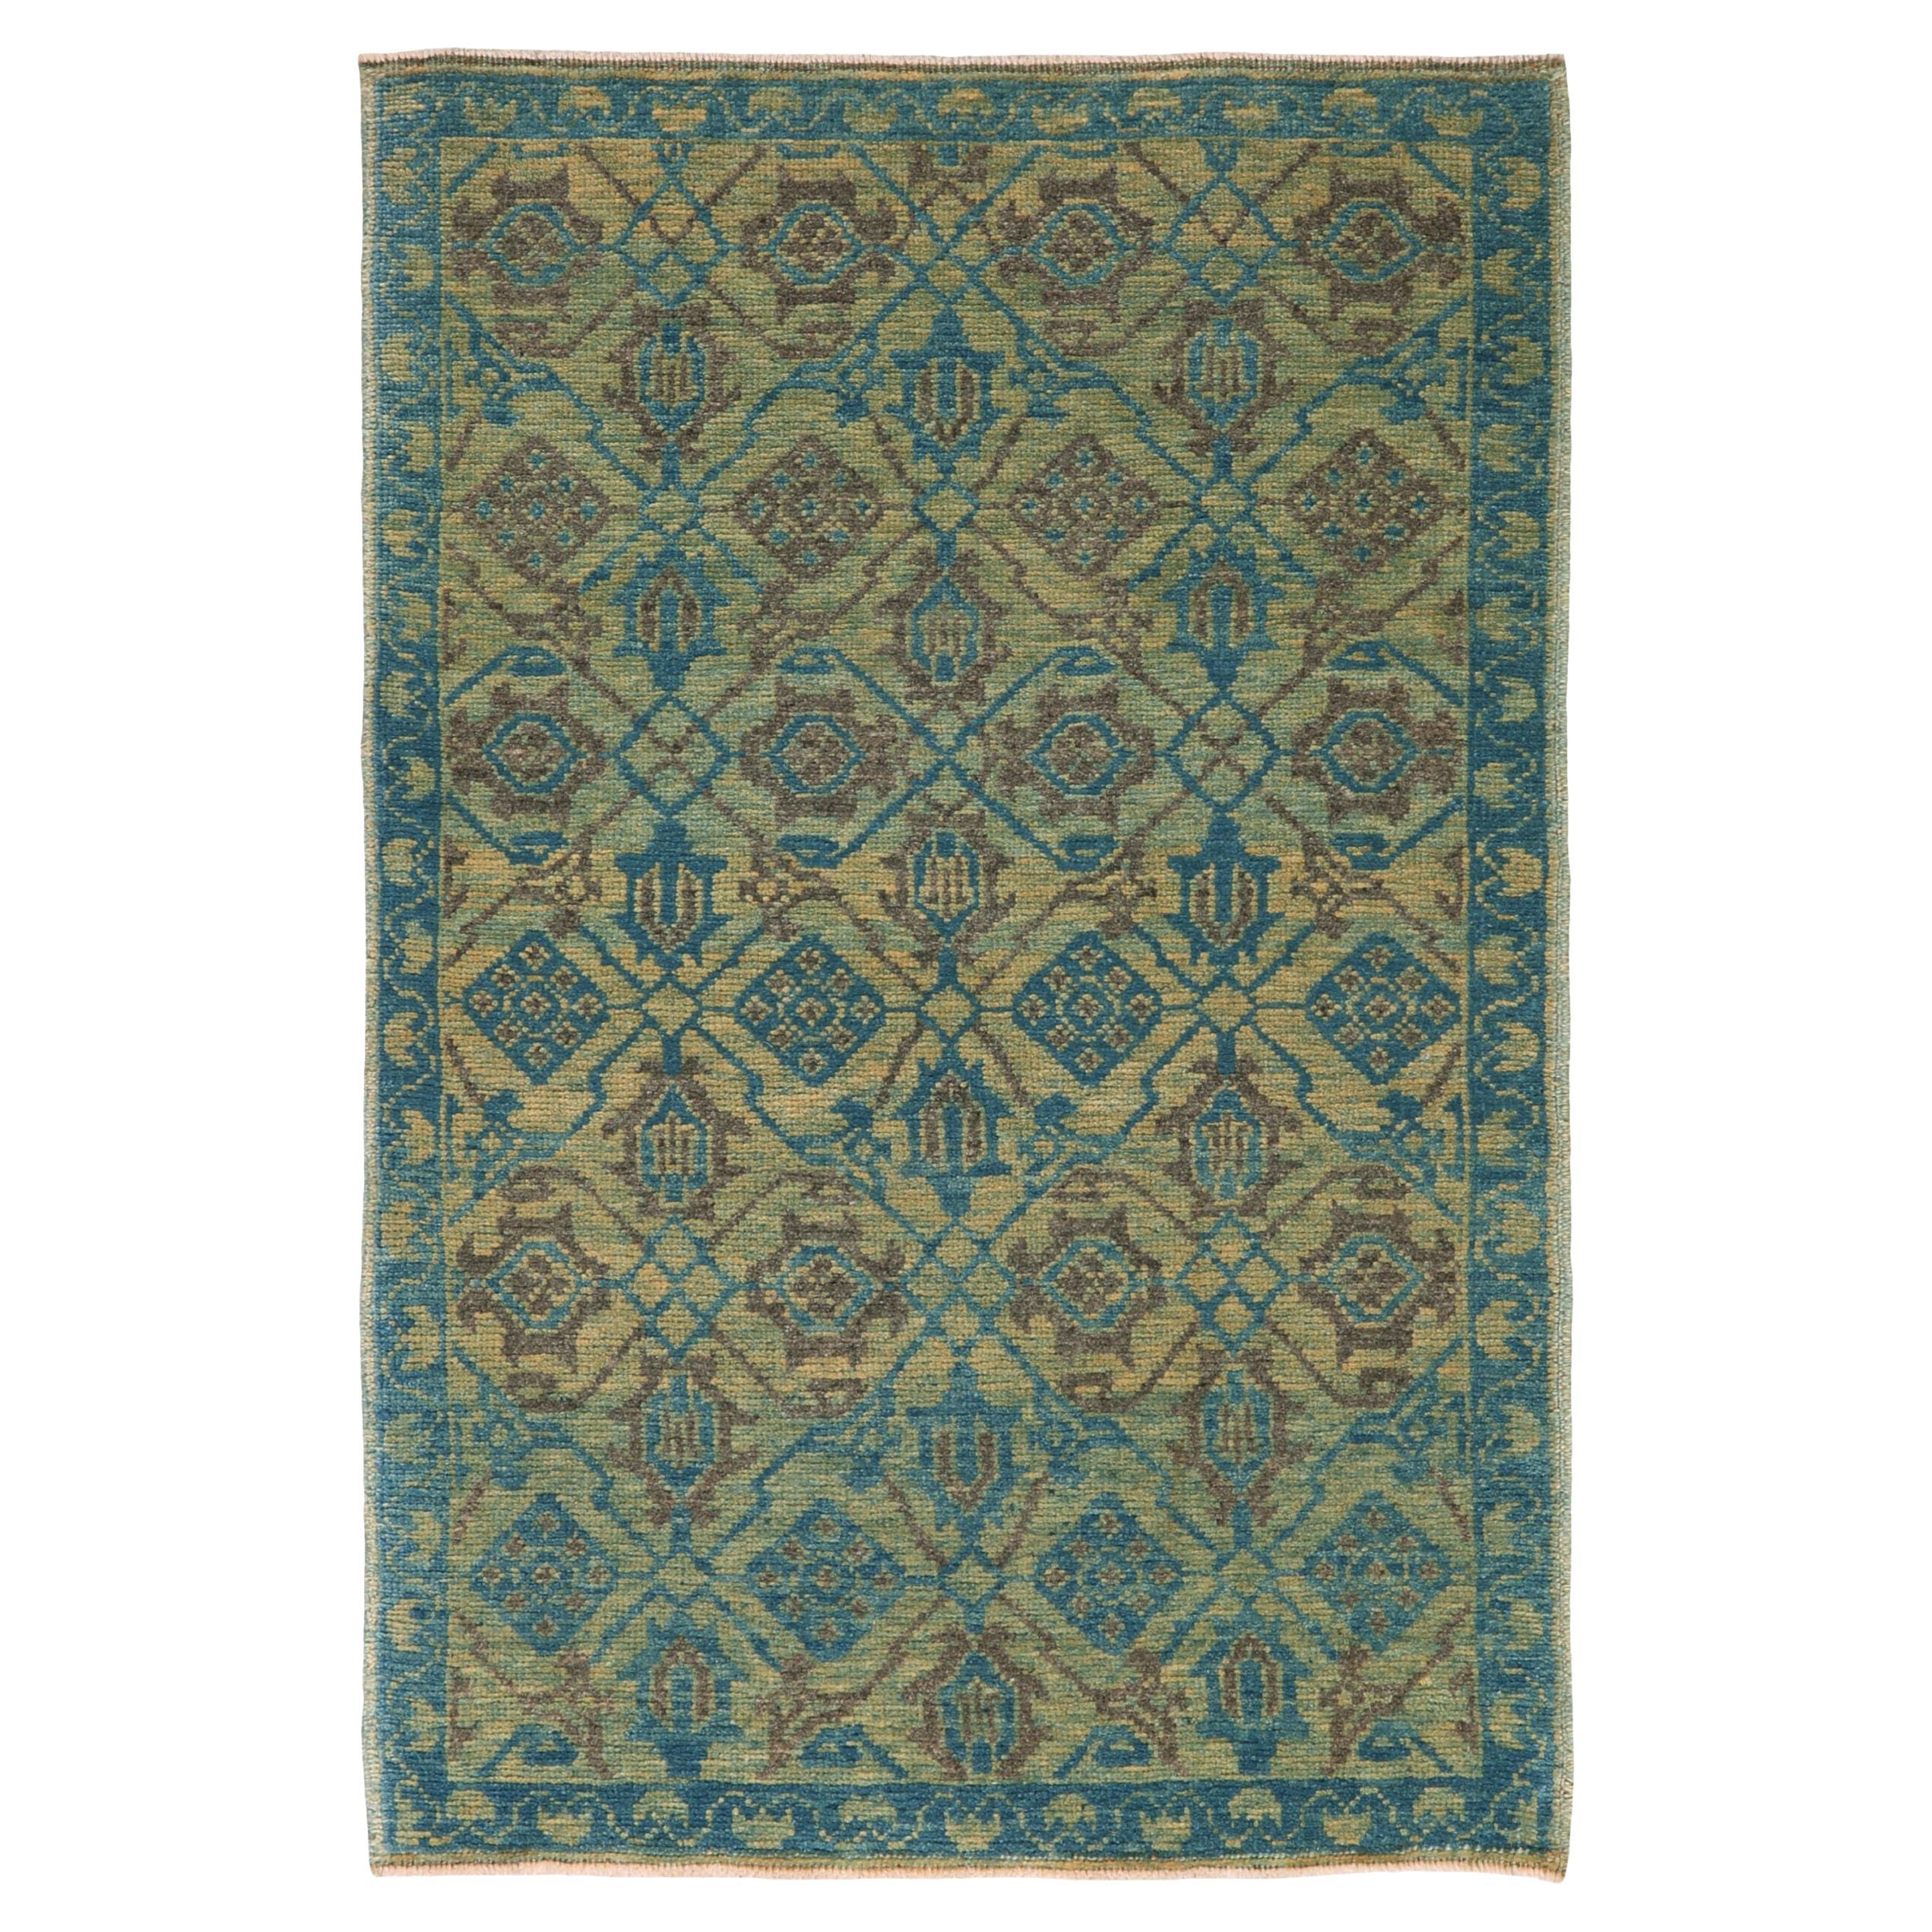 Ararat-Teppich Mamluk Wagireh Teppich Gittermuster Revival Teppich natürlich gefärbt